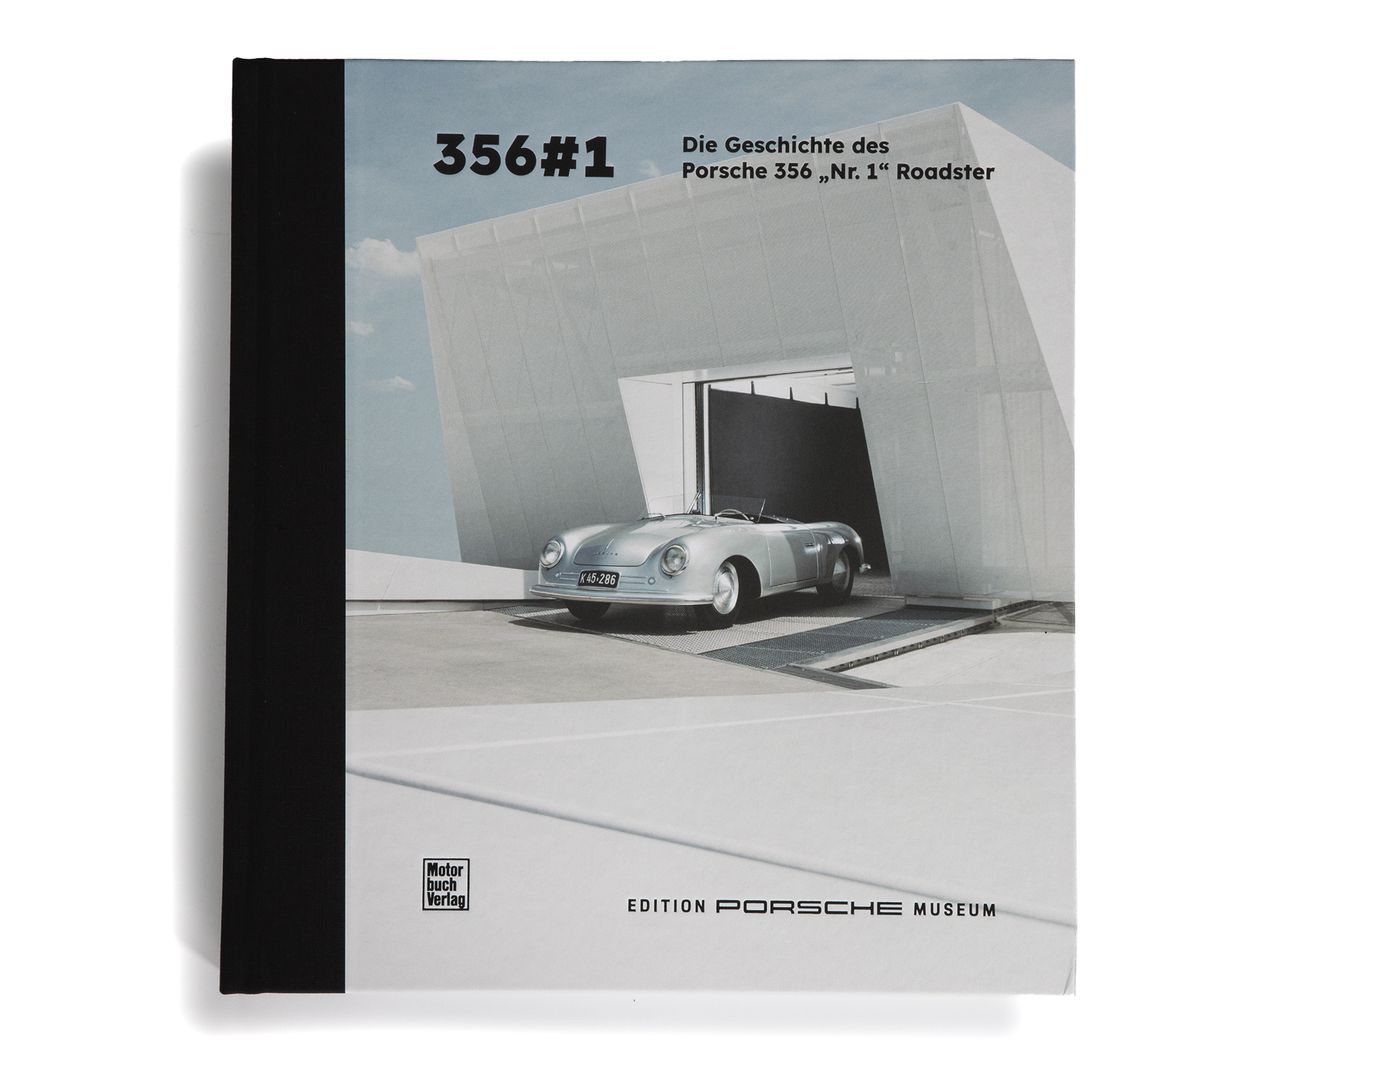 Die Geschichte des Porsche 356 No. 1
Die Geschichte des Porsche 